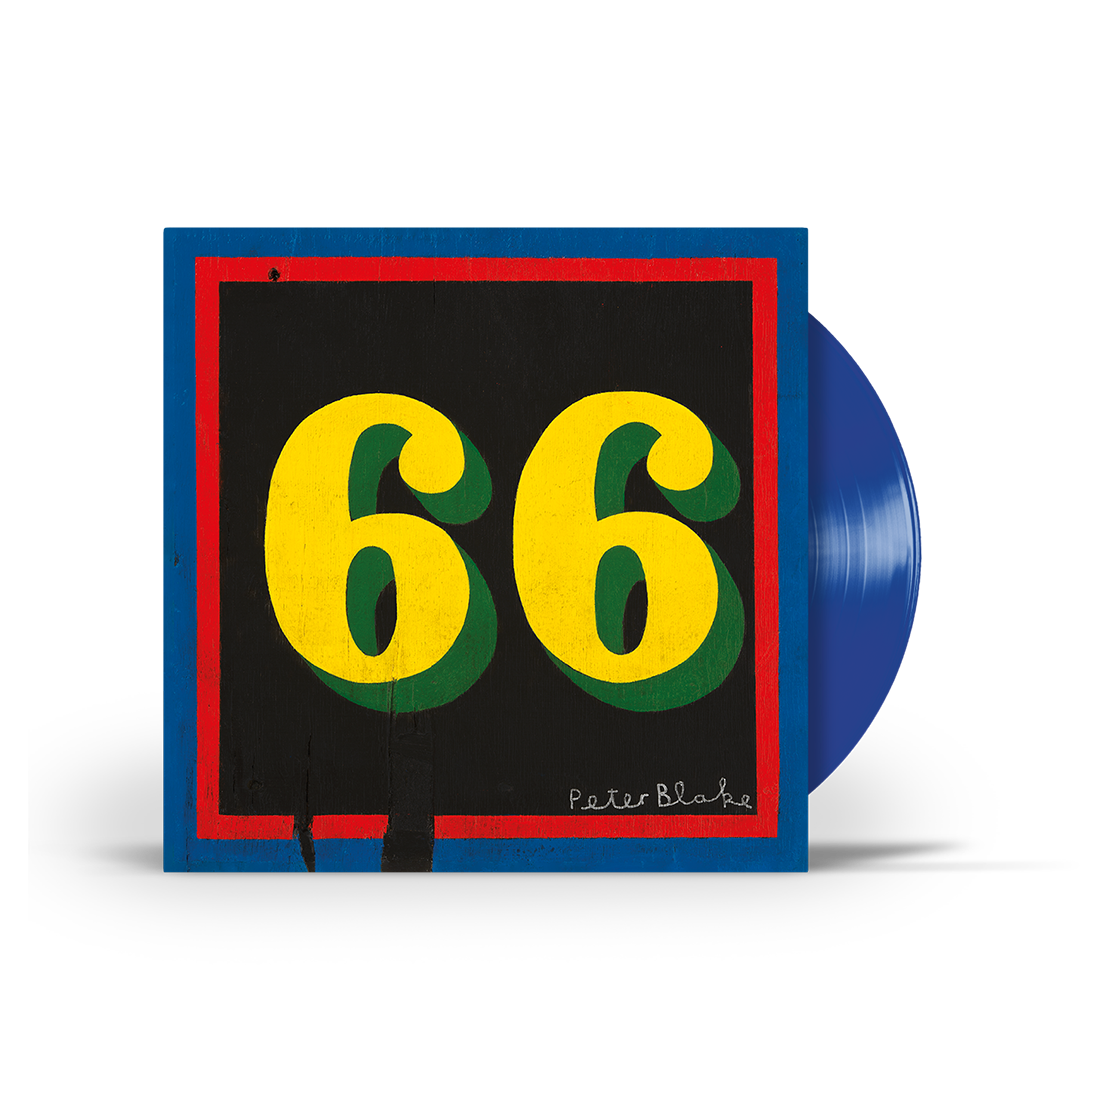 66: Limited Blue Vinyl LP, CD + Cassette